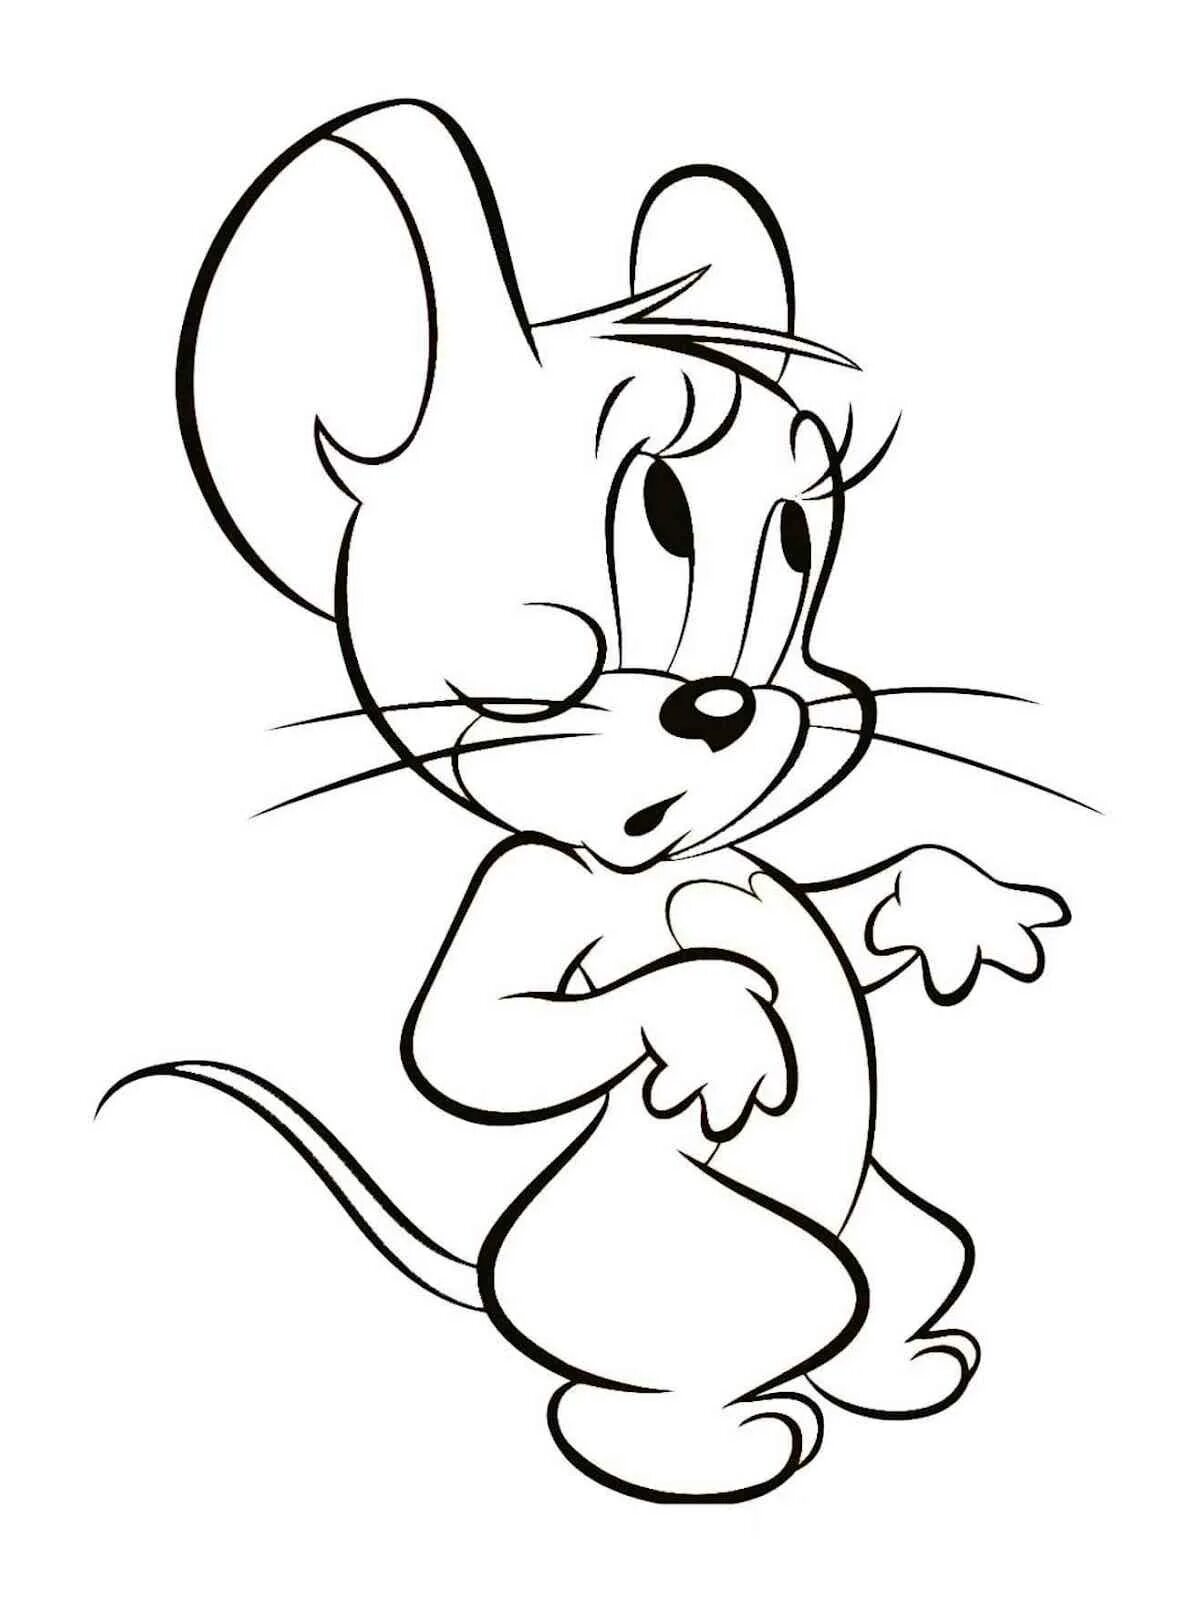 Мышонок Джерри раскраска. Раскраска мышка. Мышонок раскраска для детей. Мышка для раскрашивания детям. Раскраска мышь распечатать